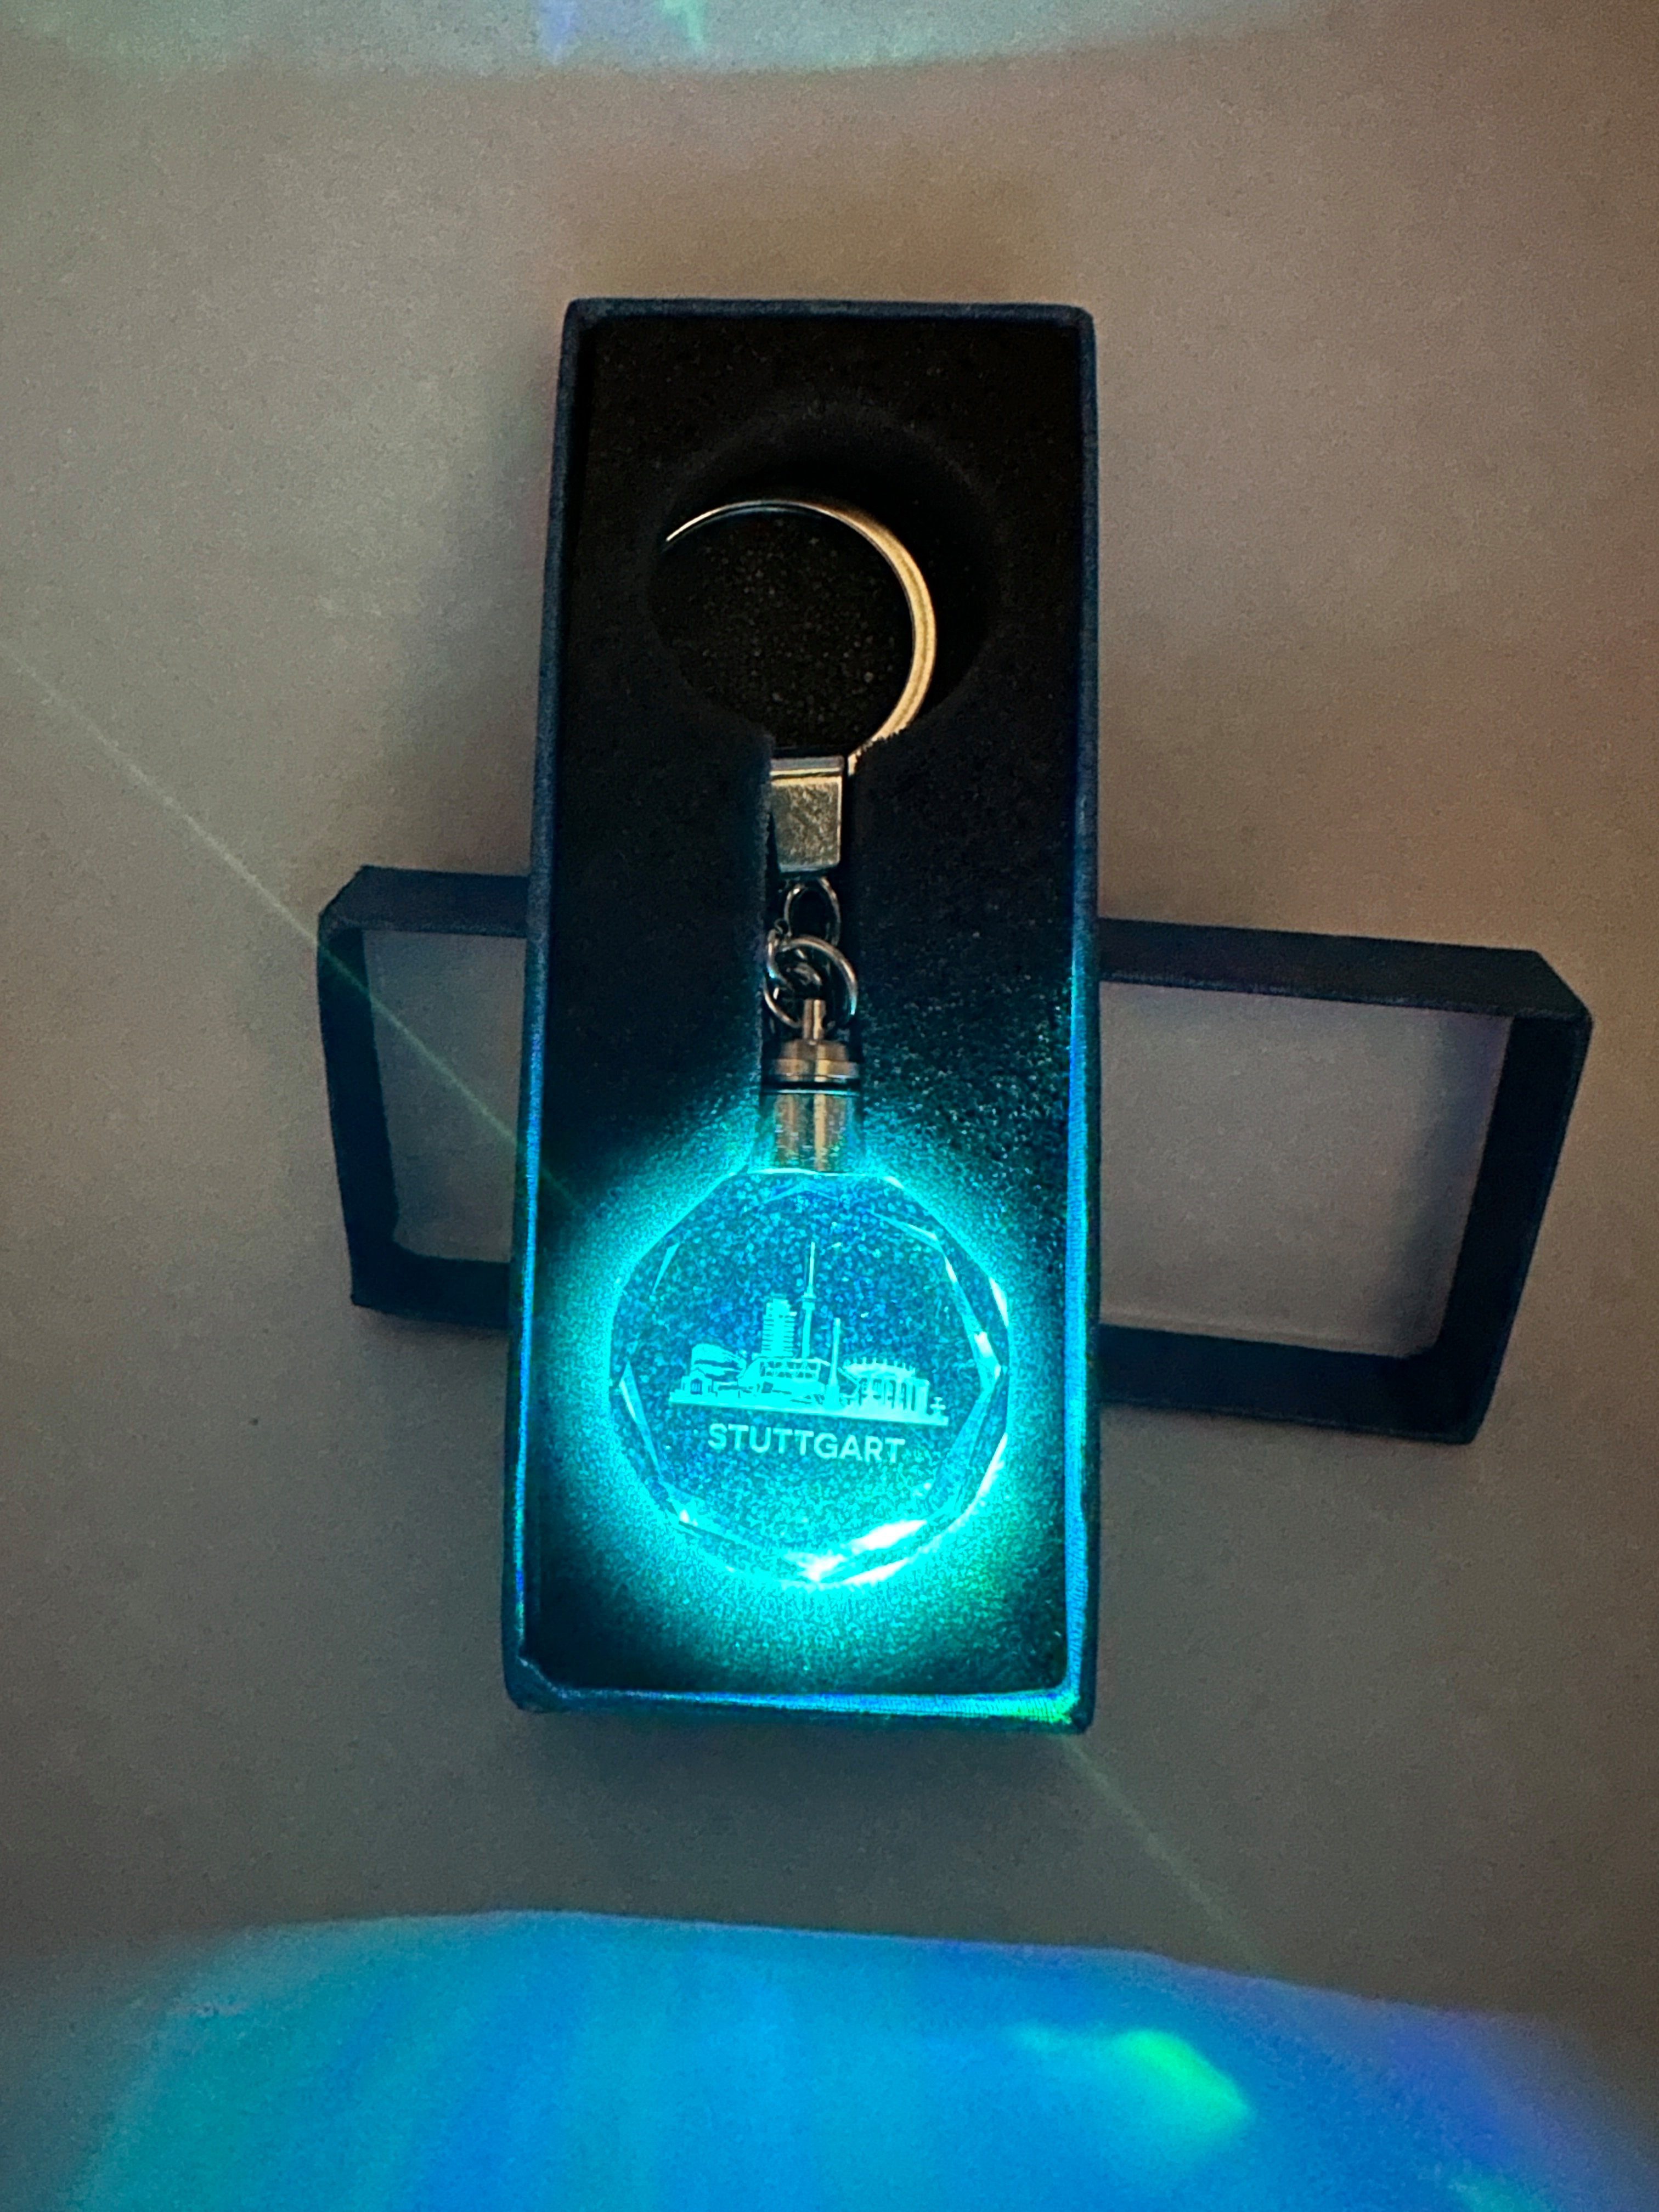 Stelby Schlüsselanhänger Stuttgart Schlüsselanhänger LED Multicolor mit Geschenkbox